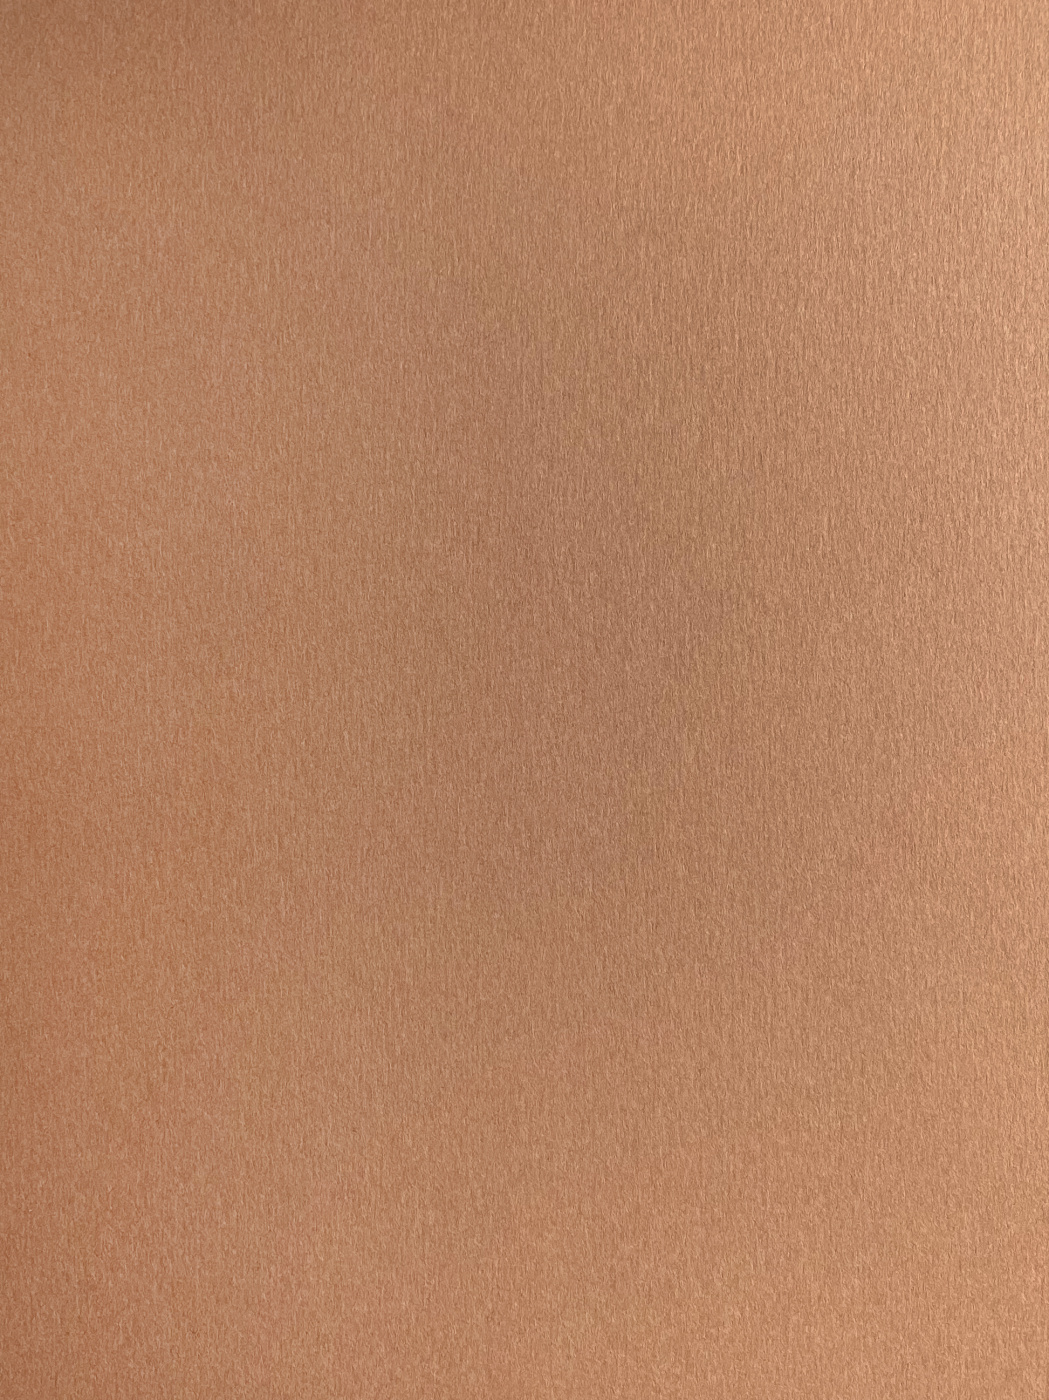 Бумага для пастели Малевичъ GrafArt А4 270 г, коричневая светлая ная бумага для оригами и аппликаций двусторонняя 10 ов 21х21 100 листов